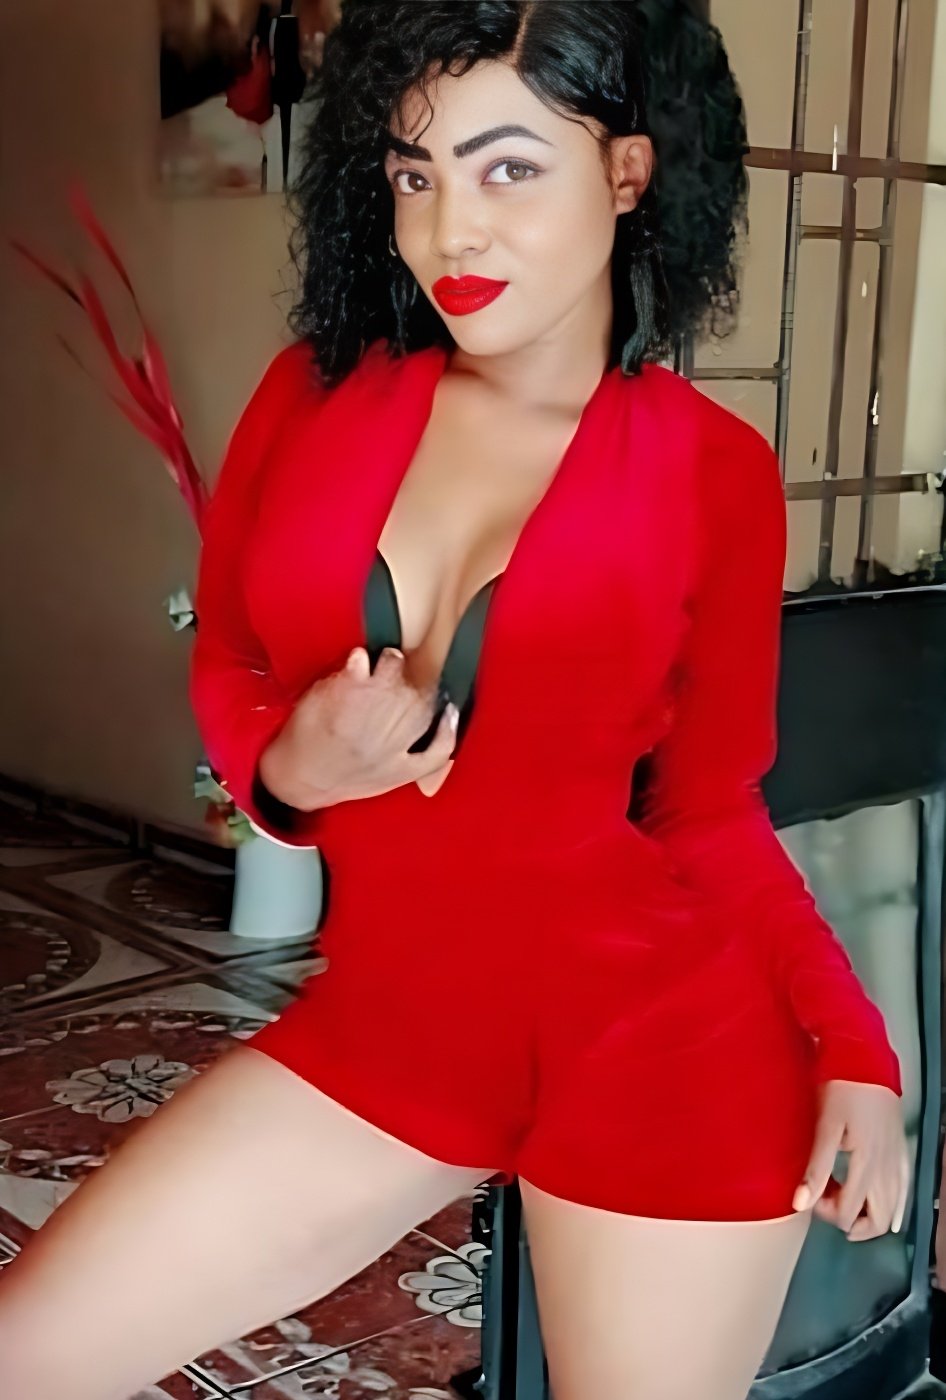 Los mejores modelos BDSM te están esperando - model photo Tinashe babes